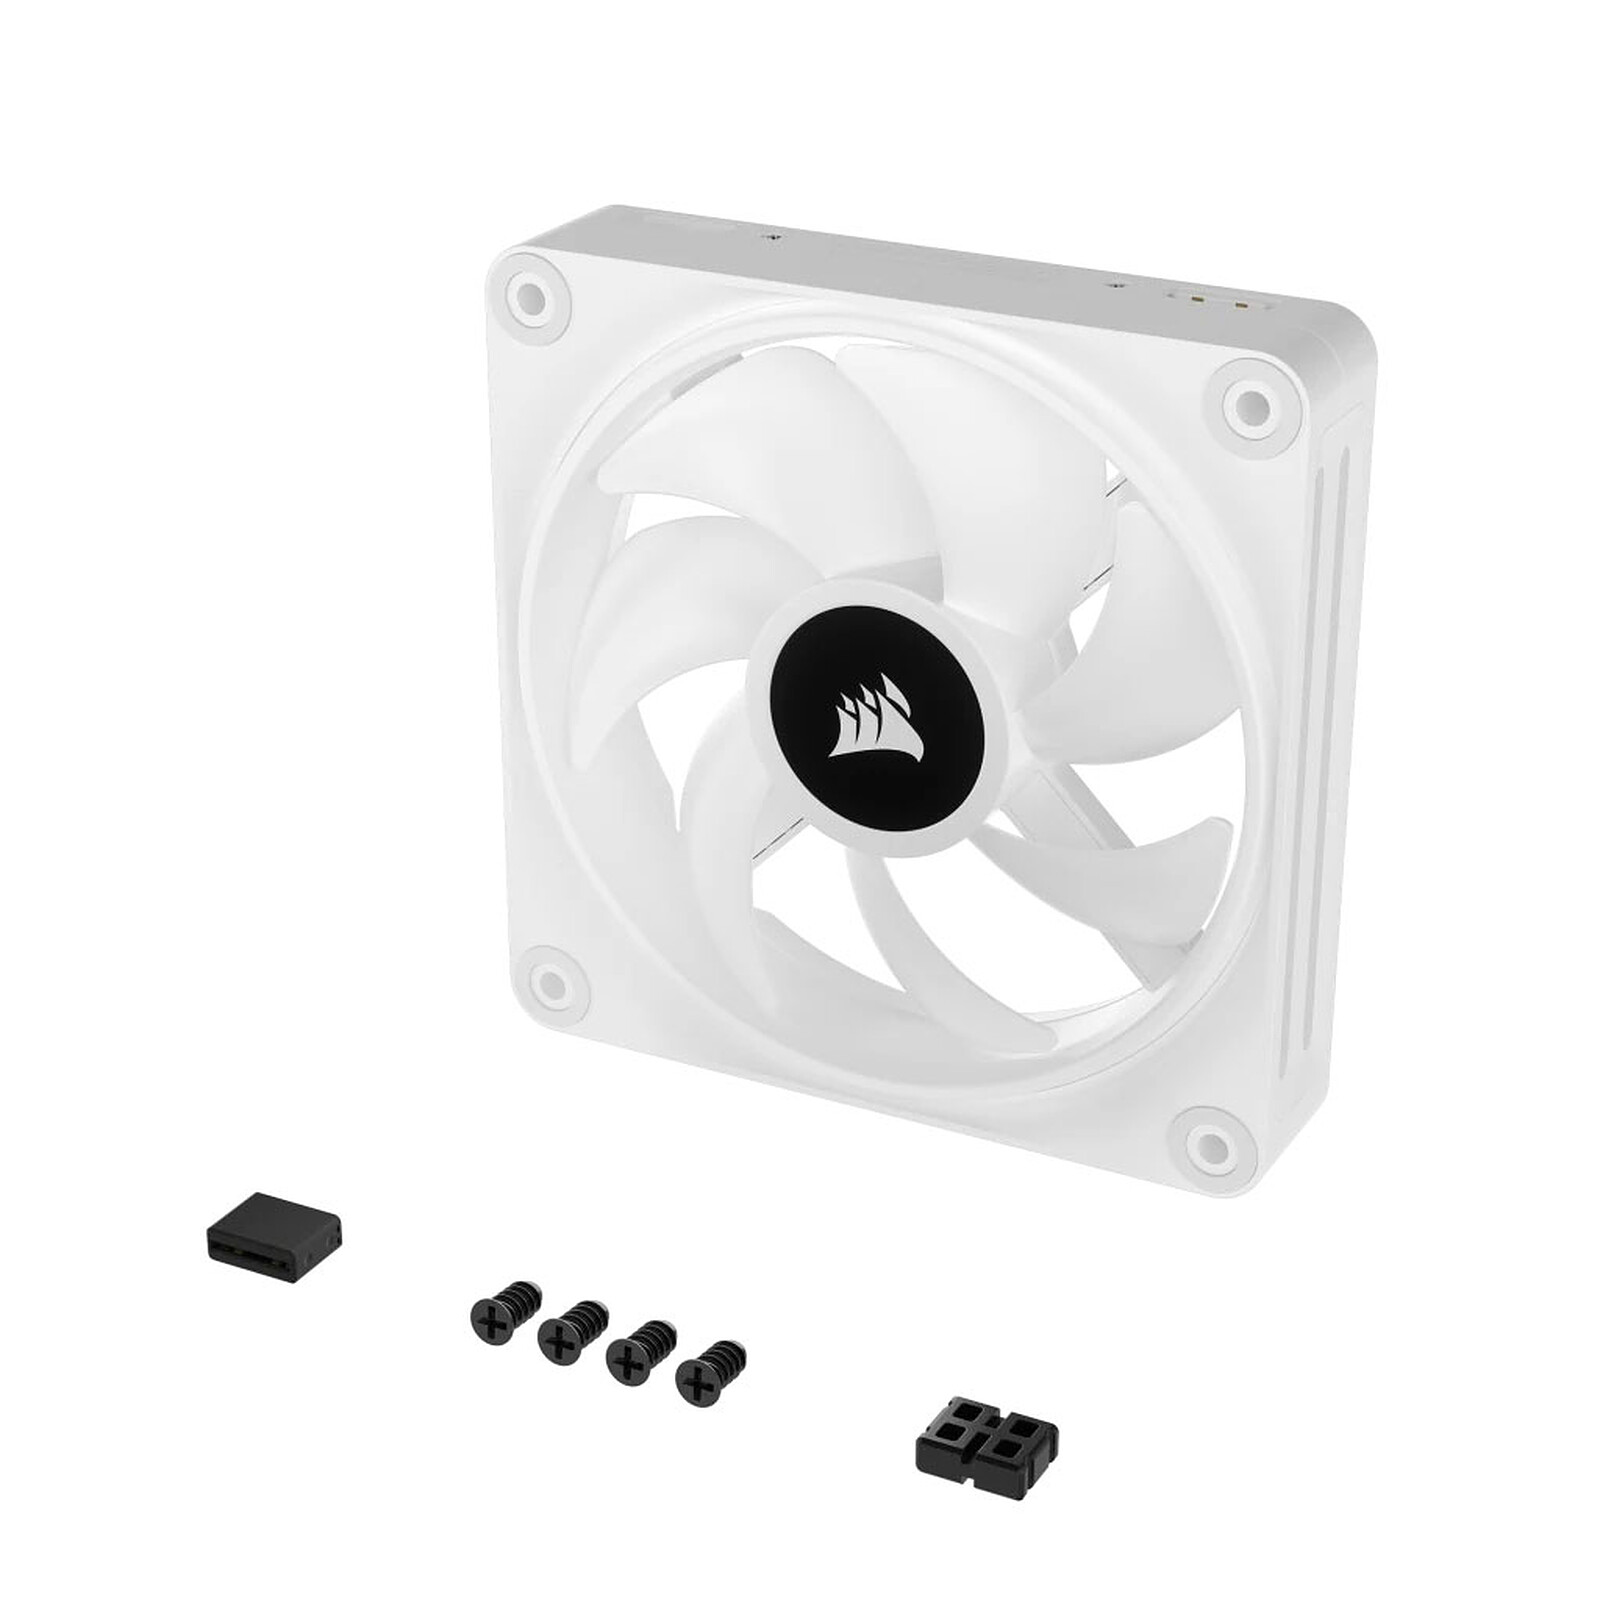 Kit d'extension ventilateur PWM PC 120 mm iCUE LINK QX120 RGB - Blanc 